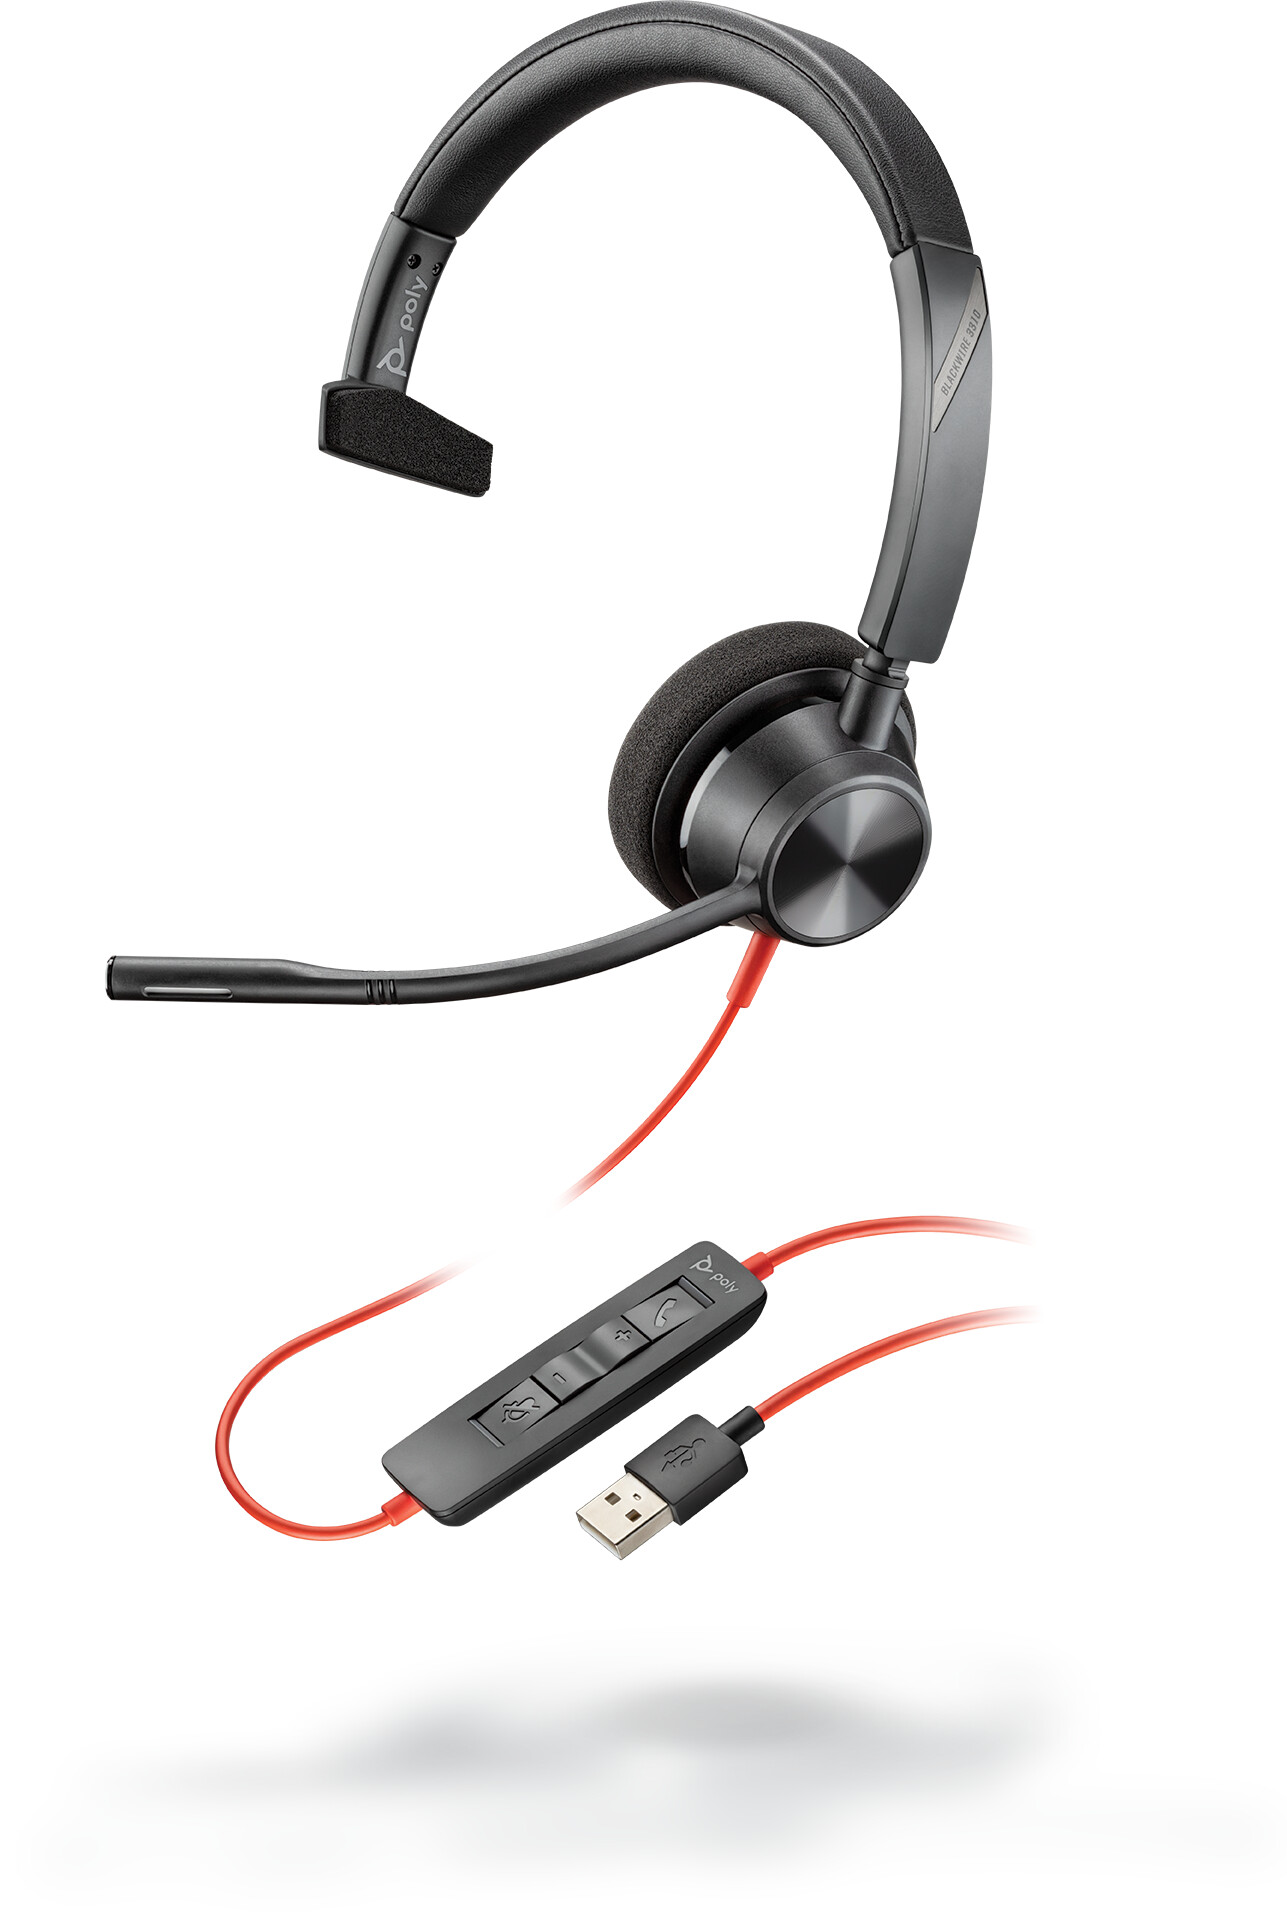 Plantronics-Blackwire-3310-UC-Mono-Headset-met-snoer-en-USB-A-aansluiting